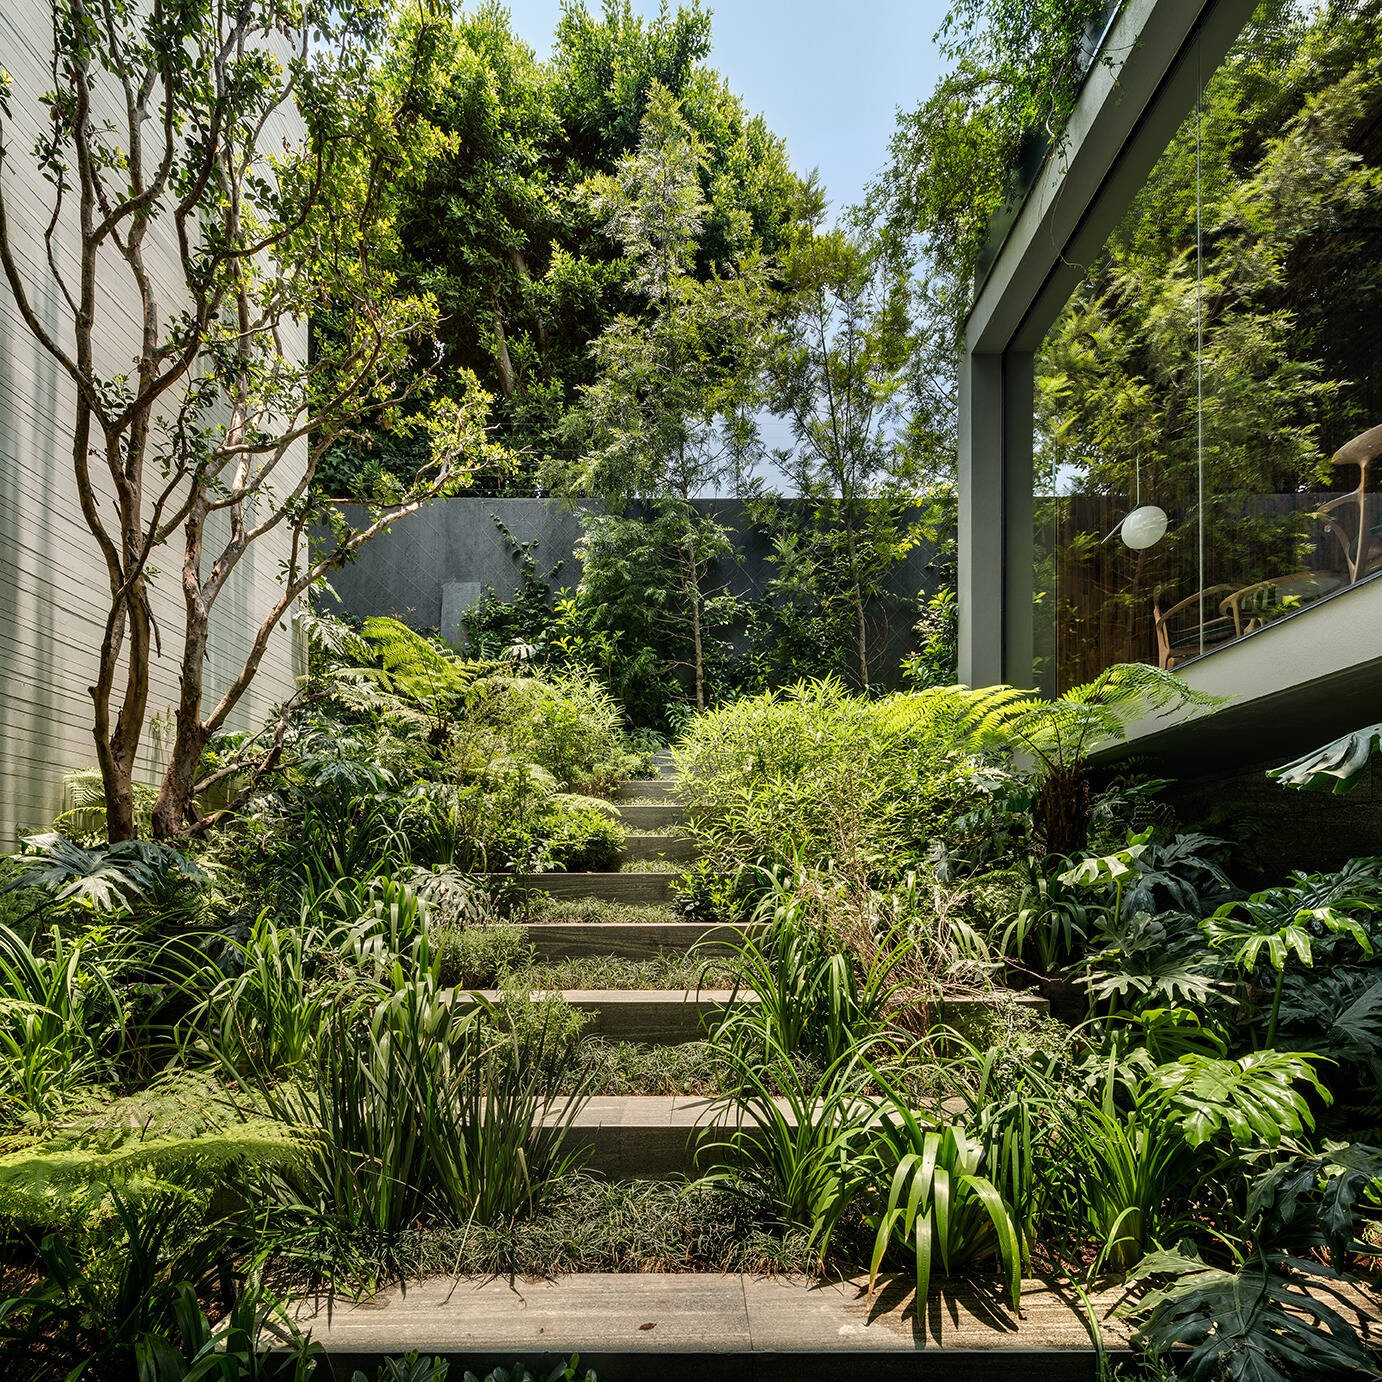 
Khu vườn tự nhiên tạo cho lối lên giữa tầng hầm với tầng 1 như là một khu rừng nhiệt đới nhỏ
